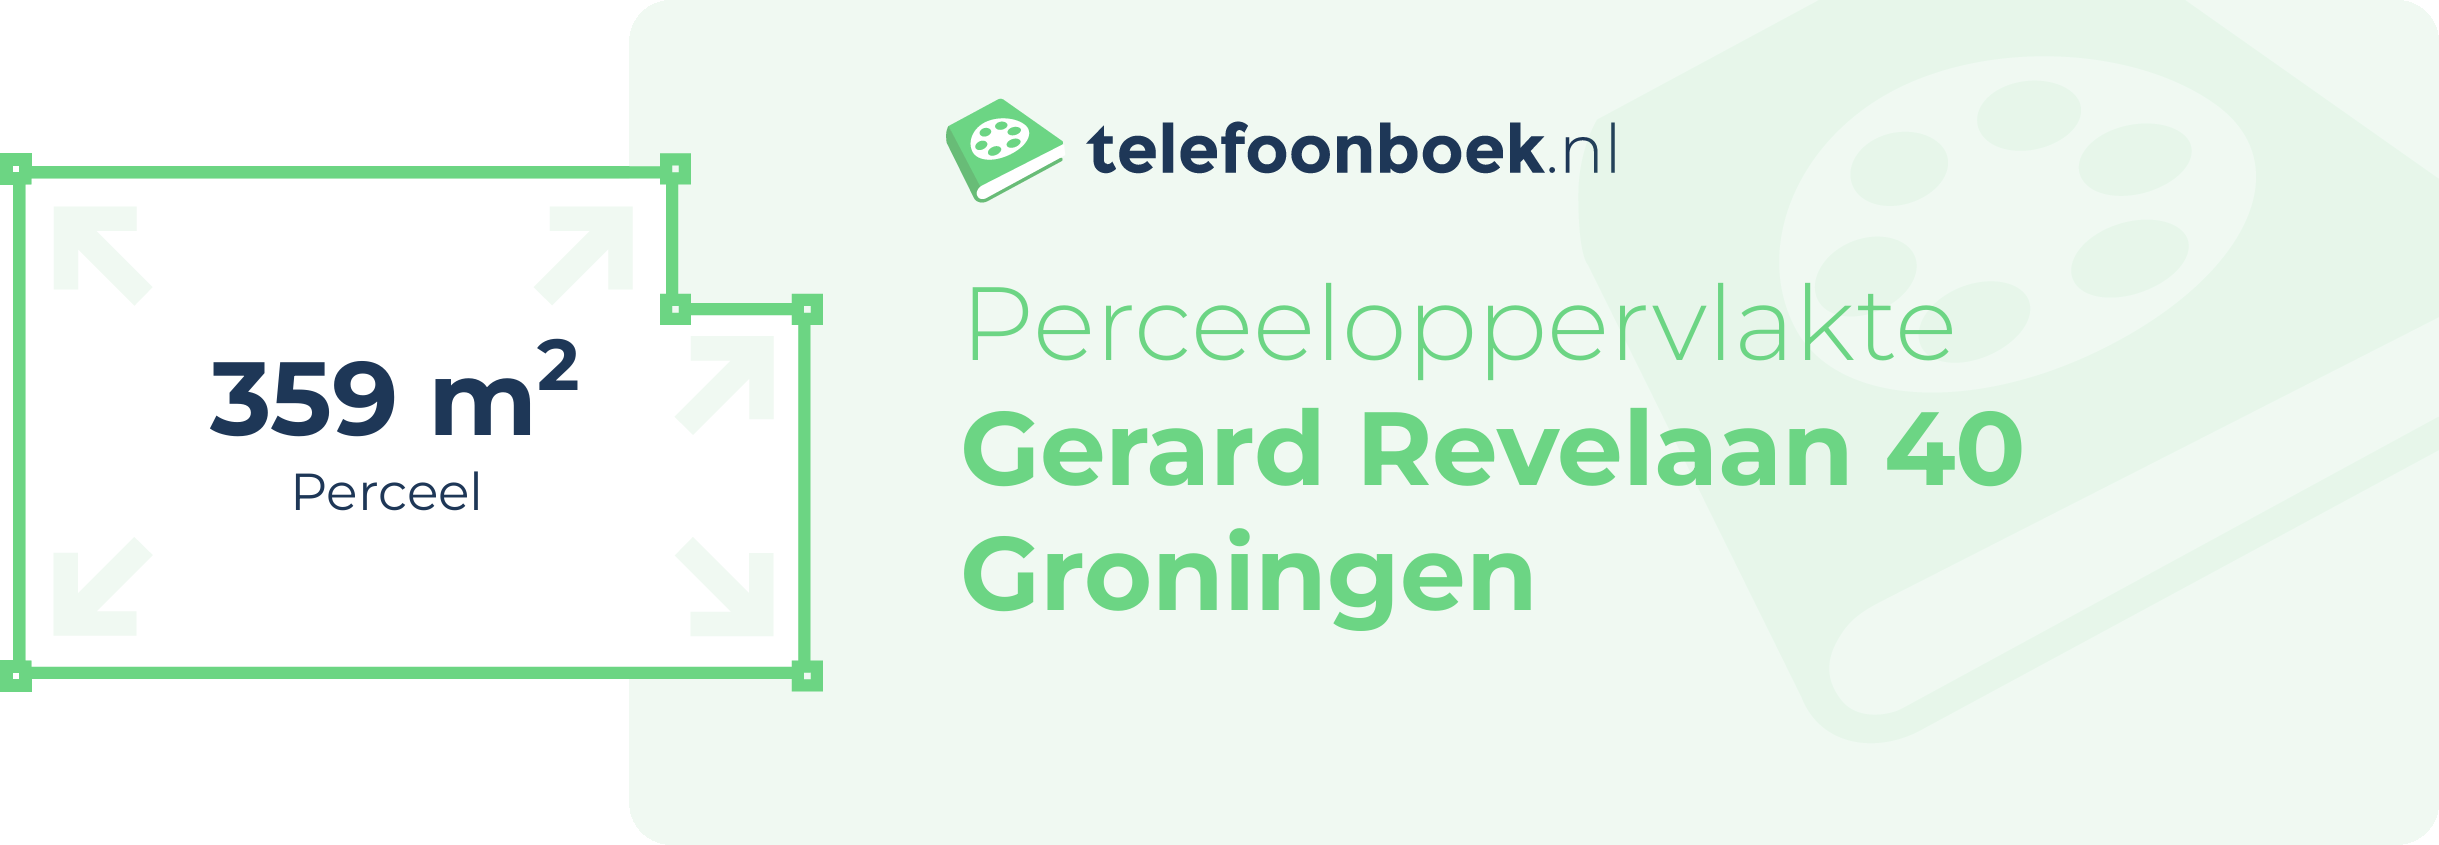 Perceeloppervlakte Gerard Revelaan 40 Groningen